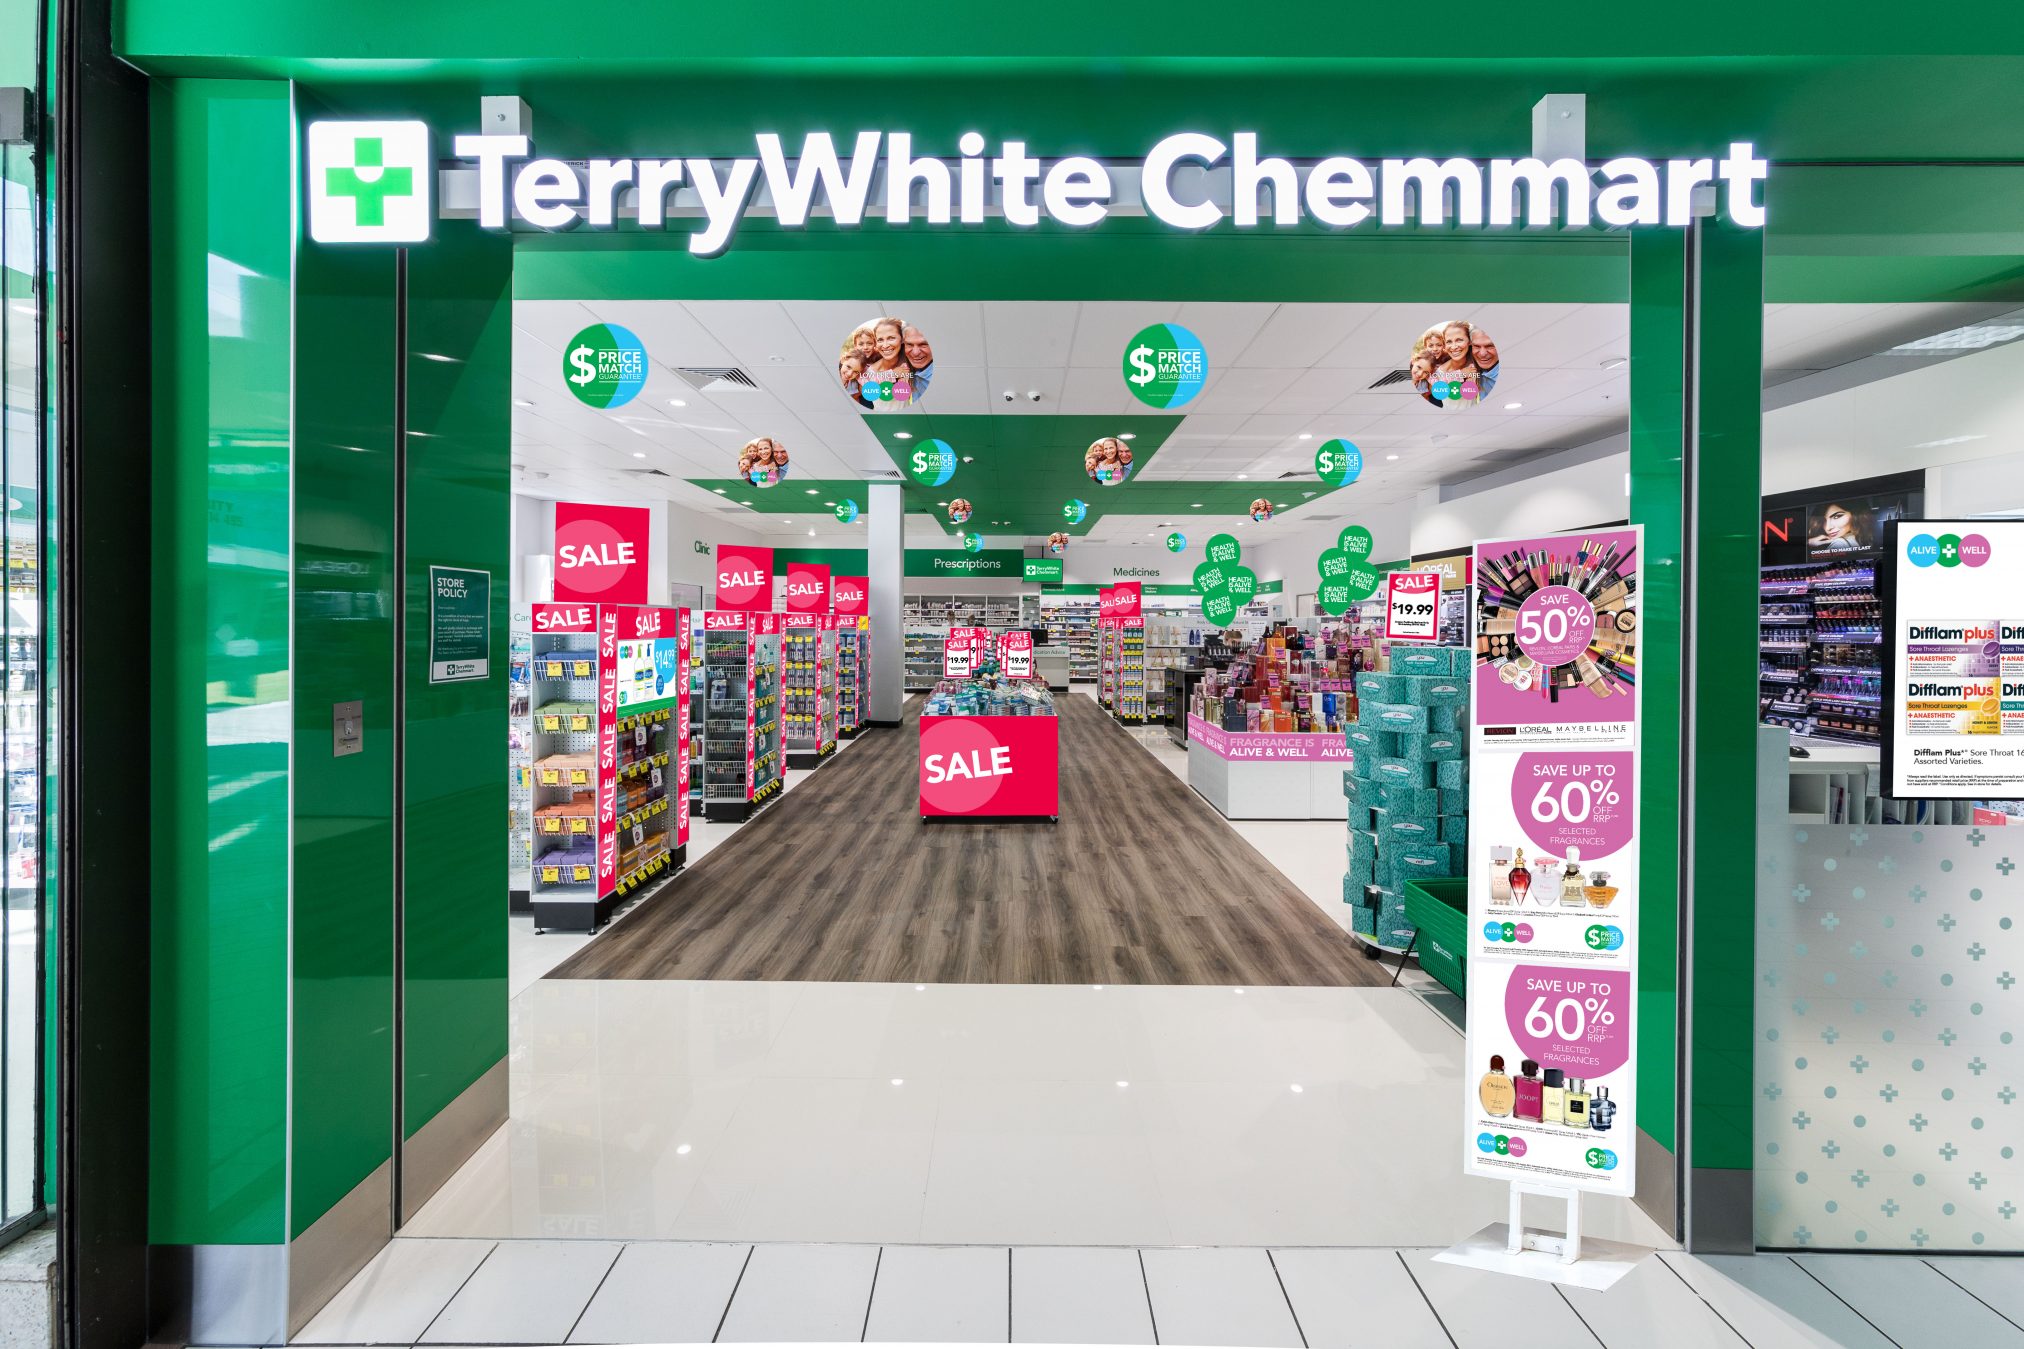 TerryWhite Chemmart shopfront